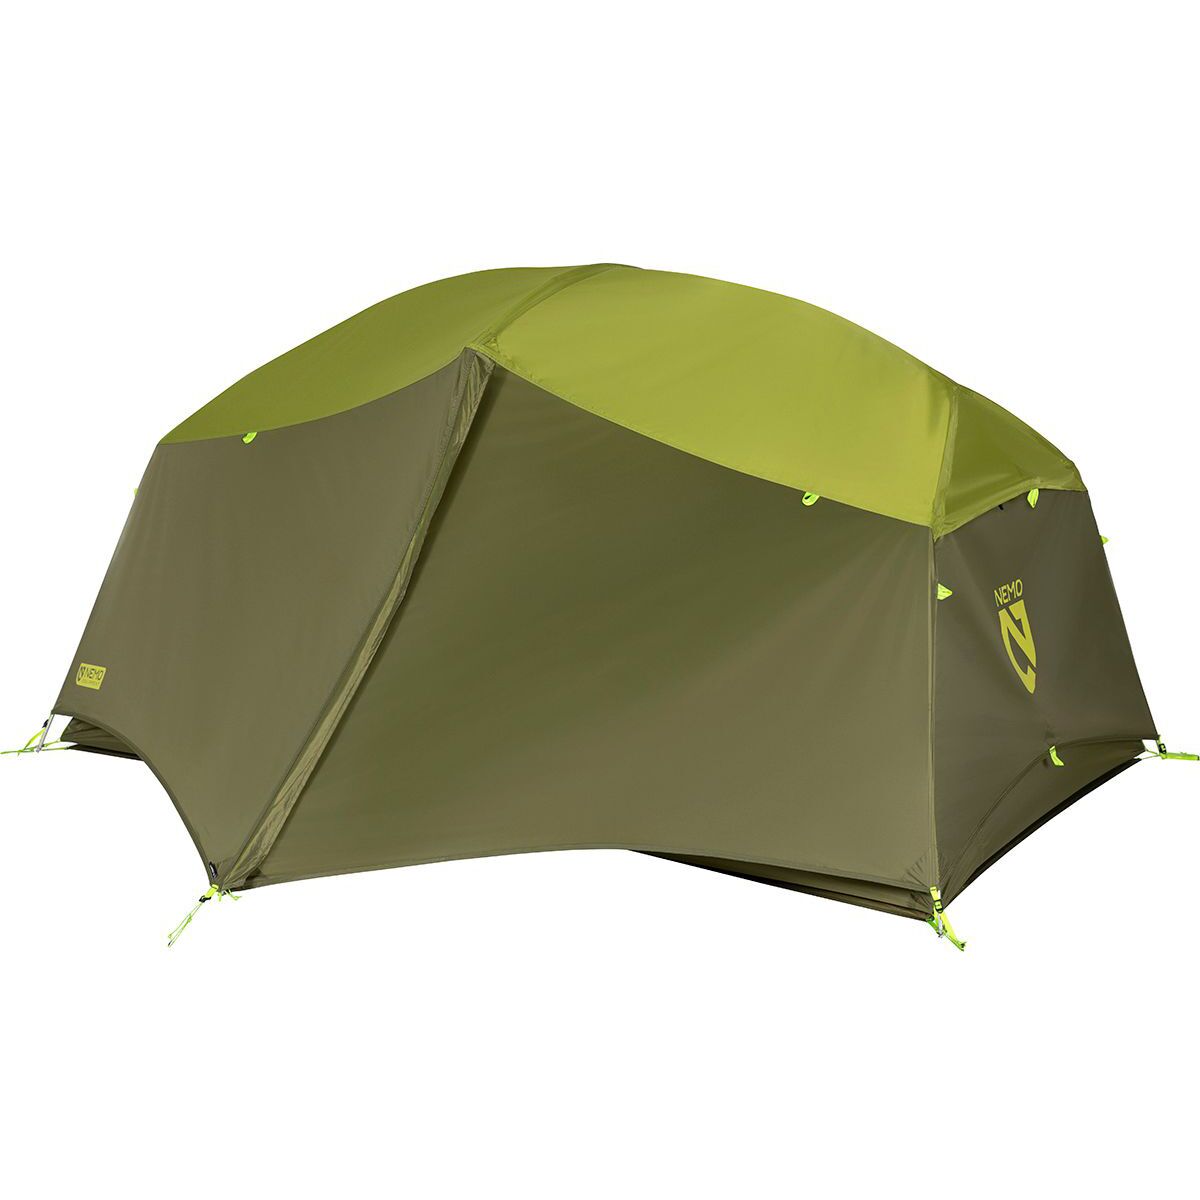 NEMO Equipment Inc. Aurora 2P Tent: 2-Person 3-Season